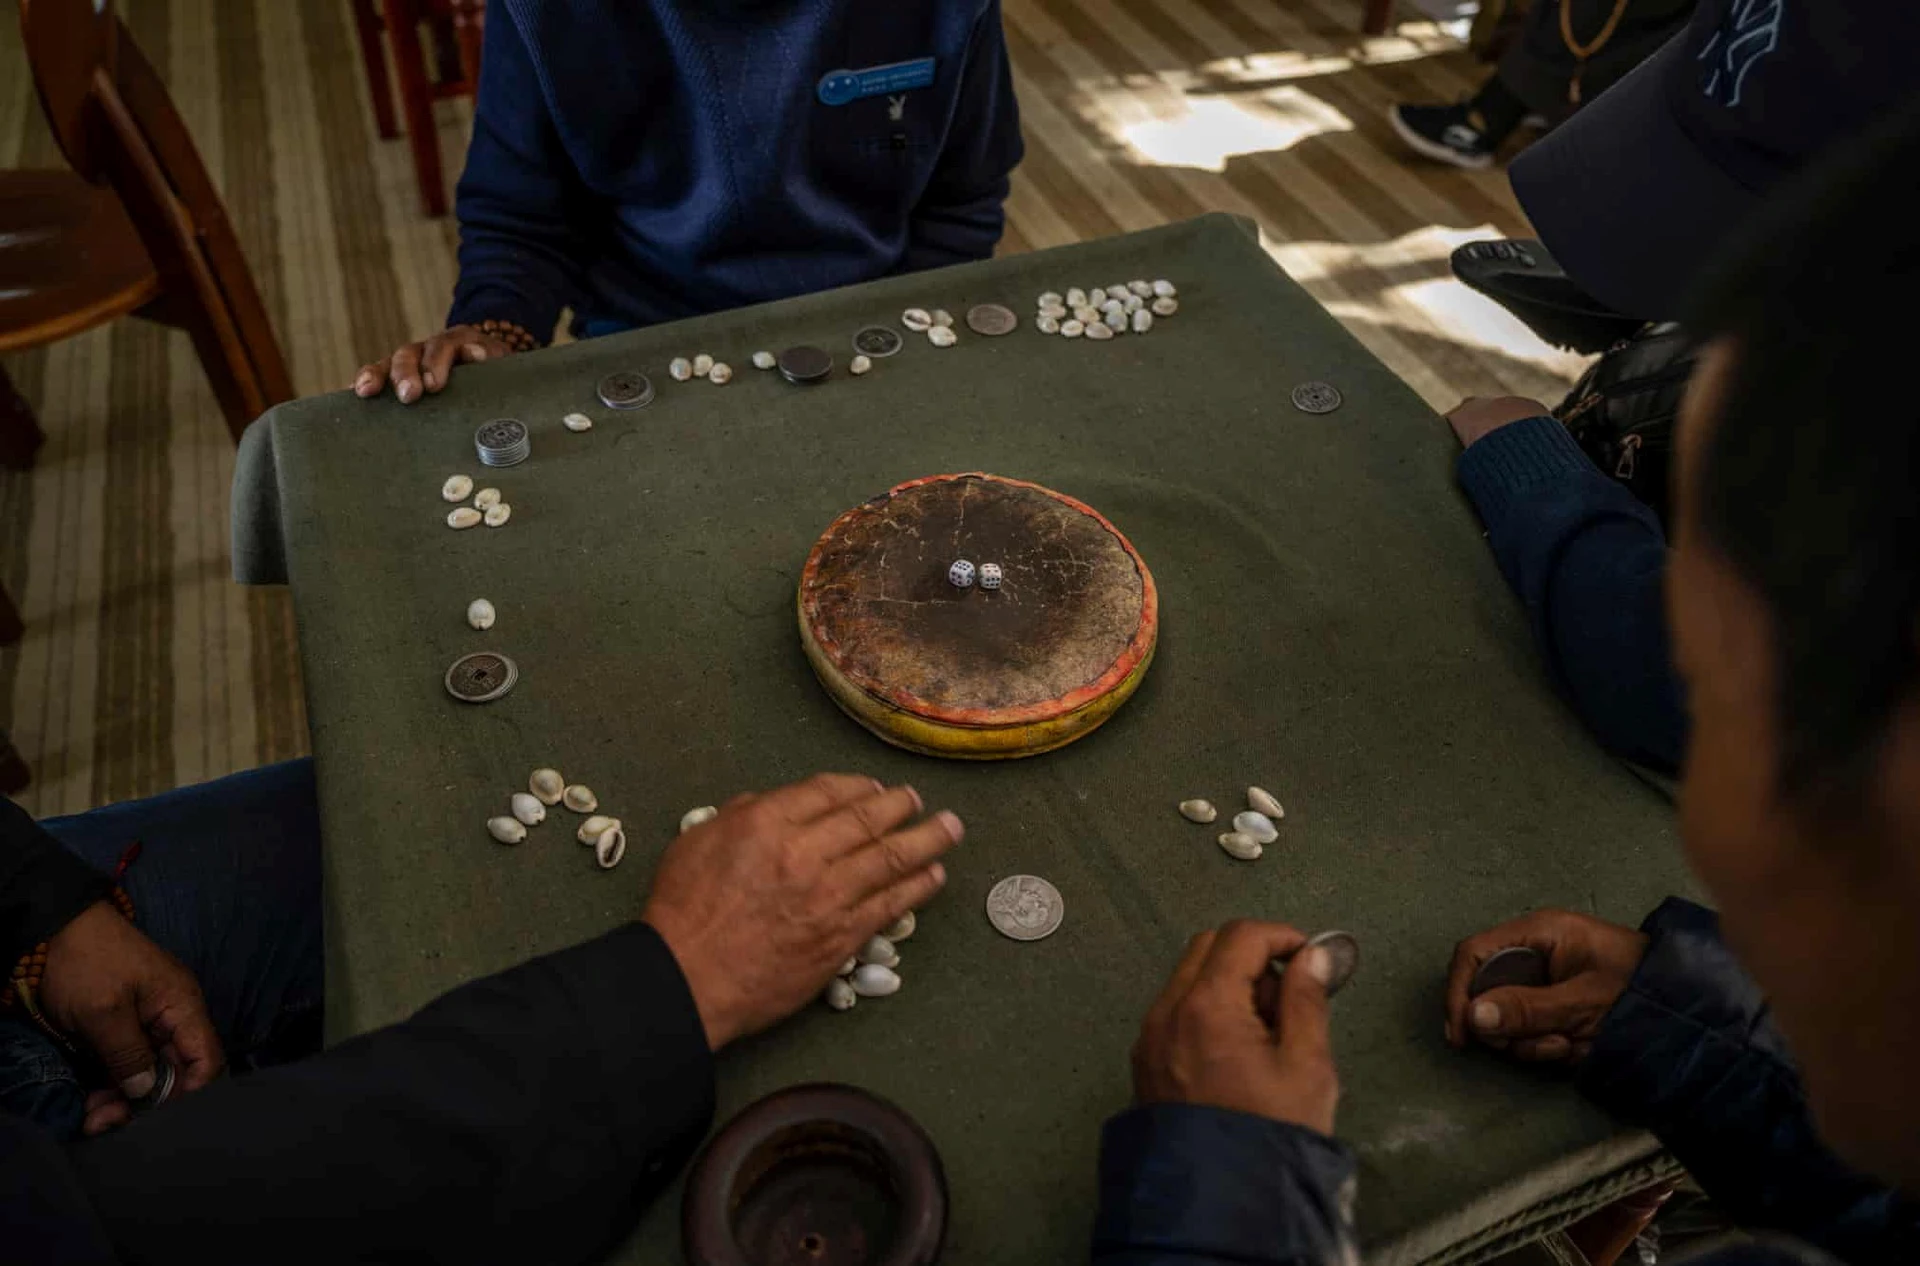 Những người này đang chơi một trò chơi truyền thống của Tây Tạng tại viện dưỡng lão Caigongtang. Trò này có tên là "sho" và thường được những người đàn ông chơi cược tiền.